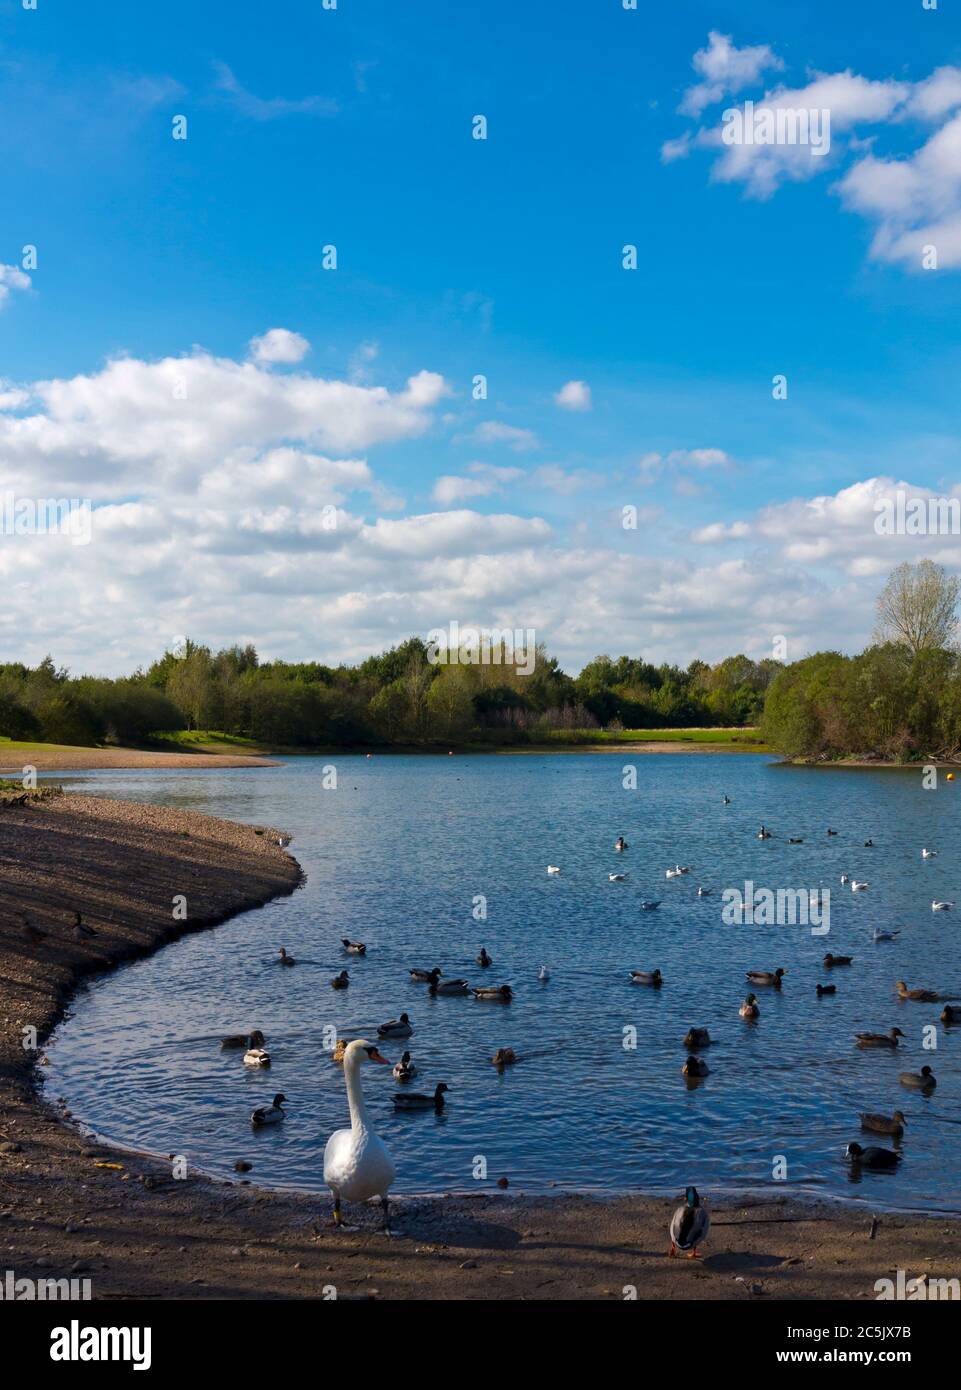 Oiseaux aquatiques à Barton Marina sur le canal Trent et Mersey dans le Staffordshire, Angleterre, Royaume-Uni. Banque D'Images